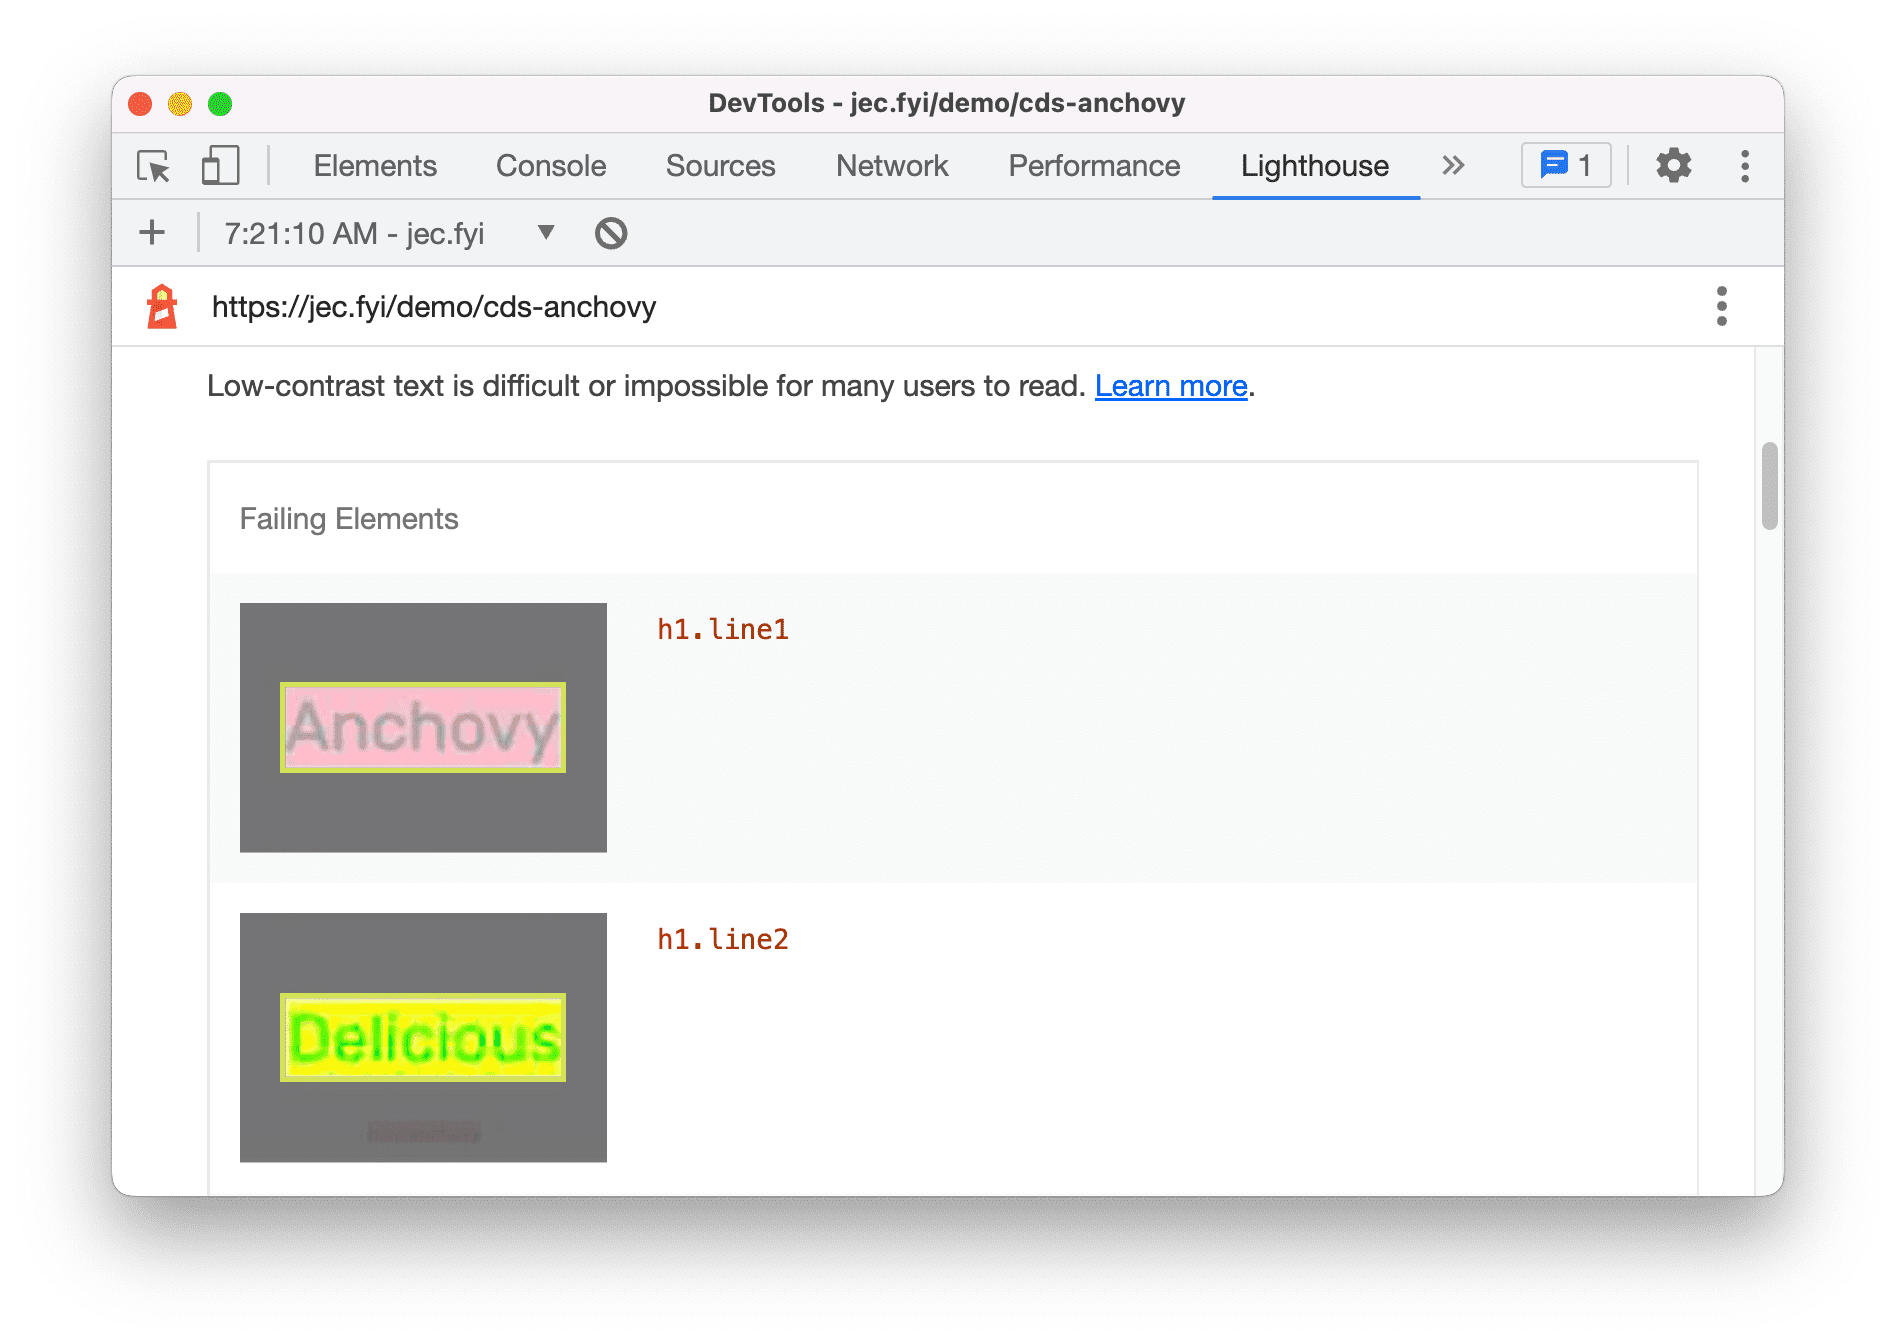 Скриншот оценки Lighthouse, показывающий результаты низкоконтрастного текста с цветовыми комбинациями из двух слов.